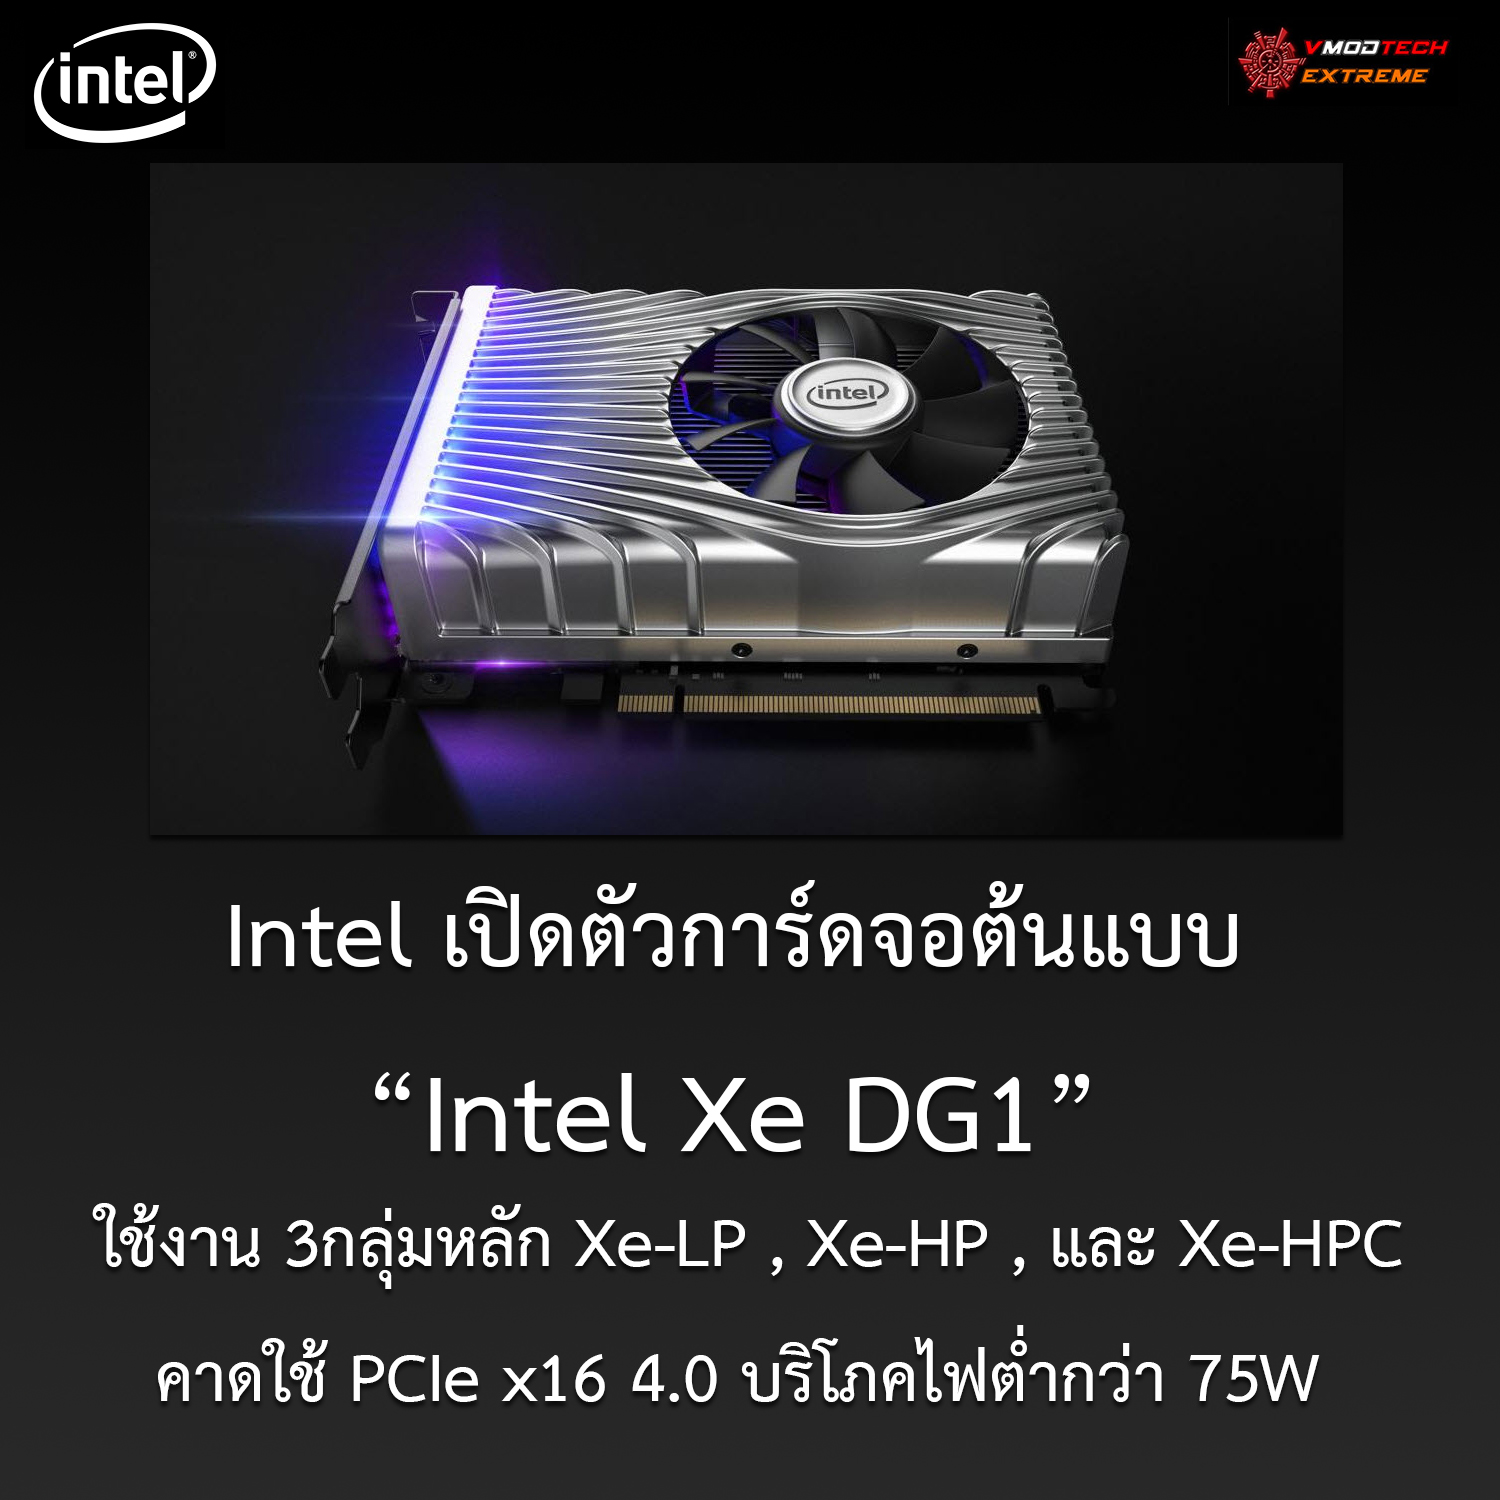 intel xe dg1 xe lp xe hp xe hpc Intel เปิดตัวการ์ดจอต้นแบบ Intel Xe DG1 ที่ออกแบบให้ใช้งาน 3กลุ่มหลัก Xe LP , Xe HP , และ Xe HPC 